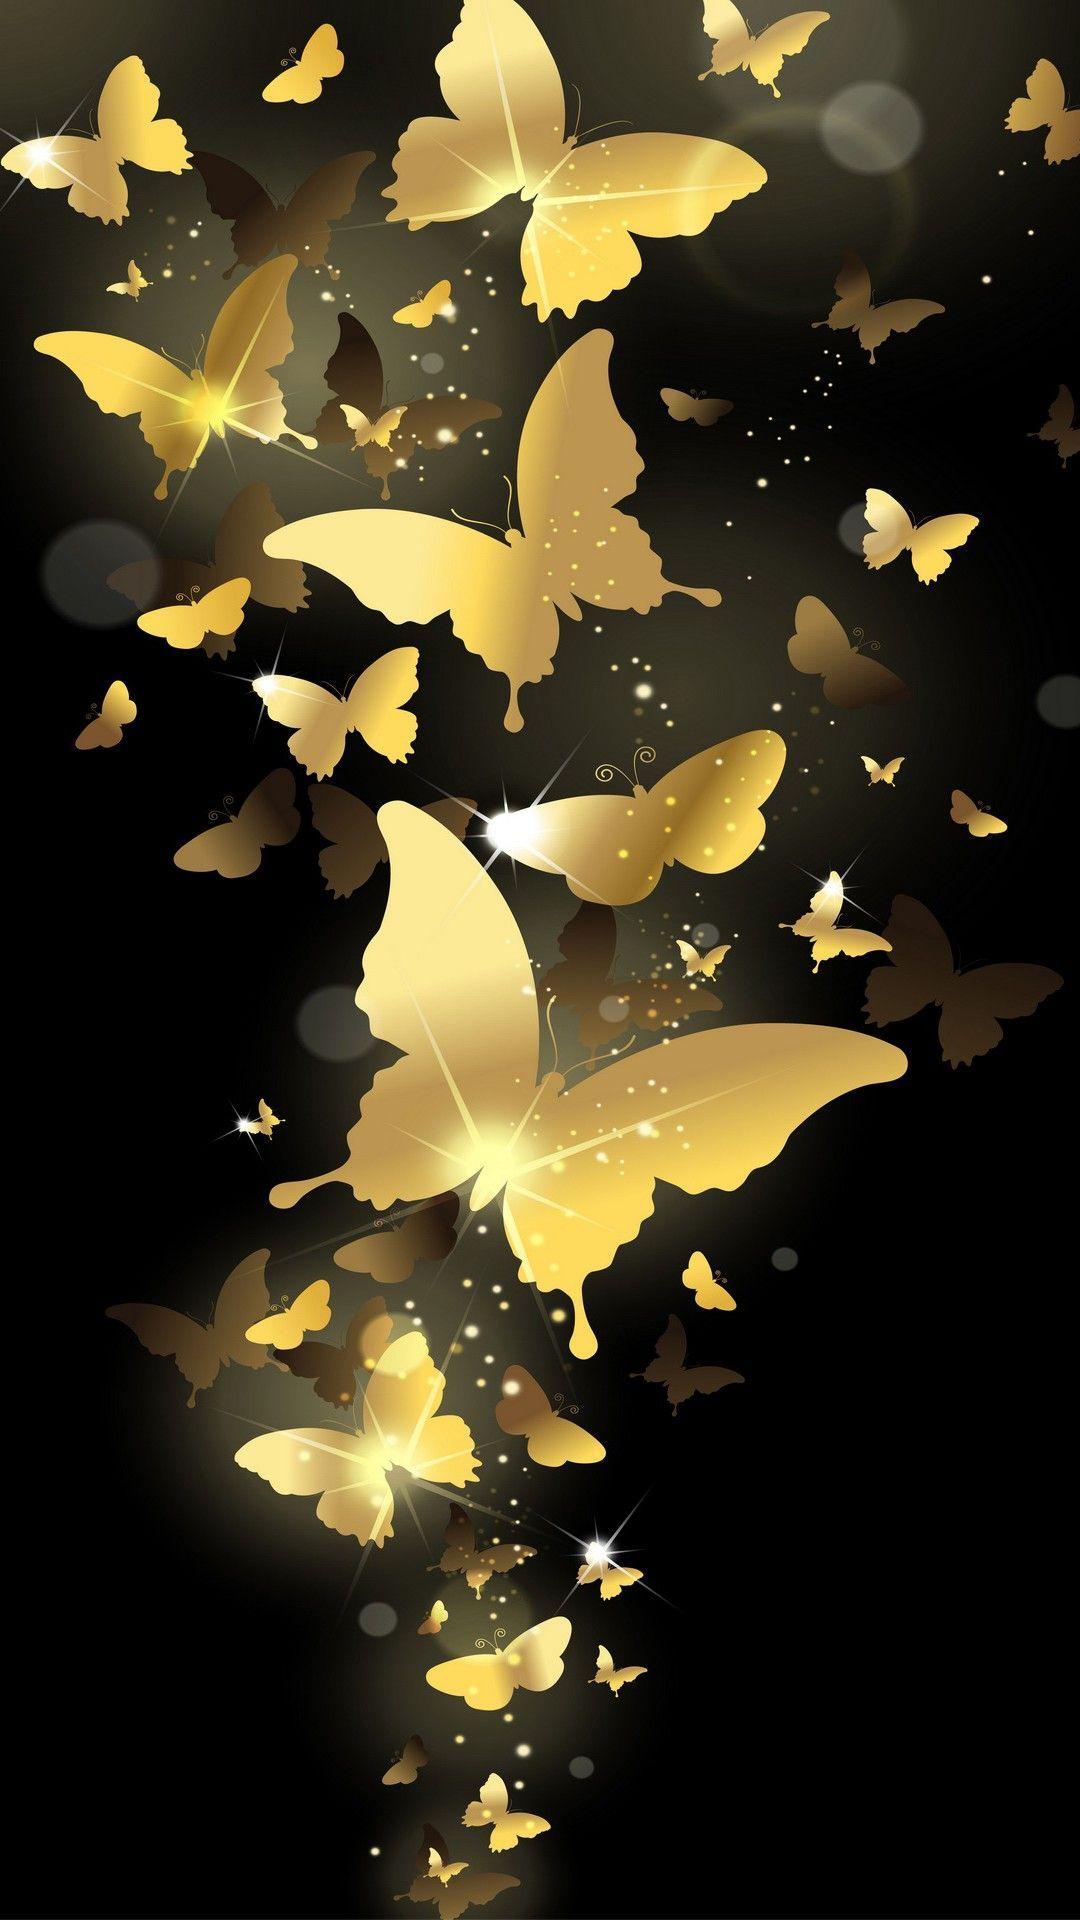 1080x1920 Bay bướm vàng Hình nền HD Hình nền iPhone 6 Plus